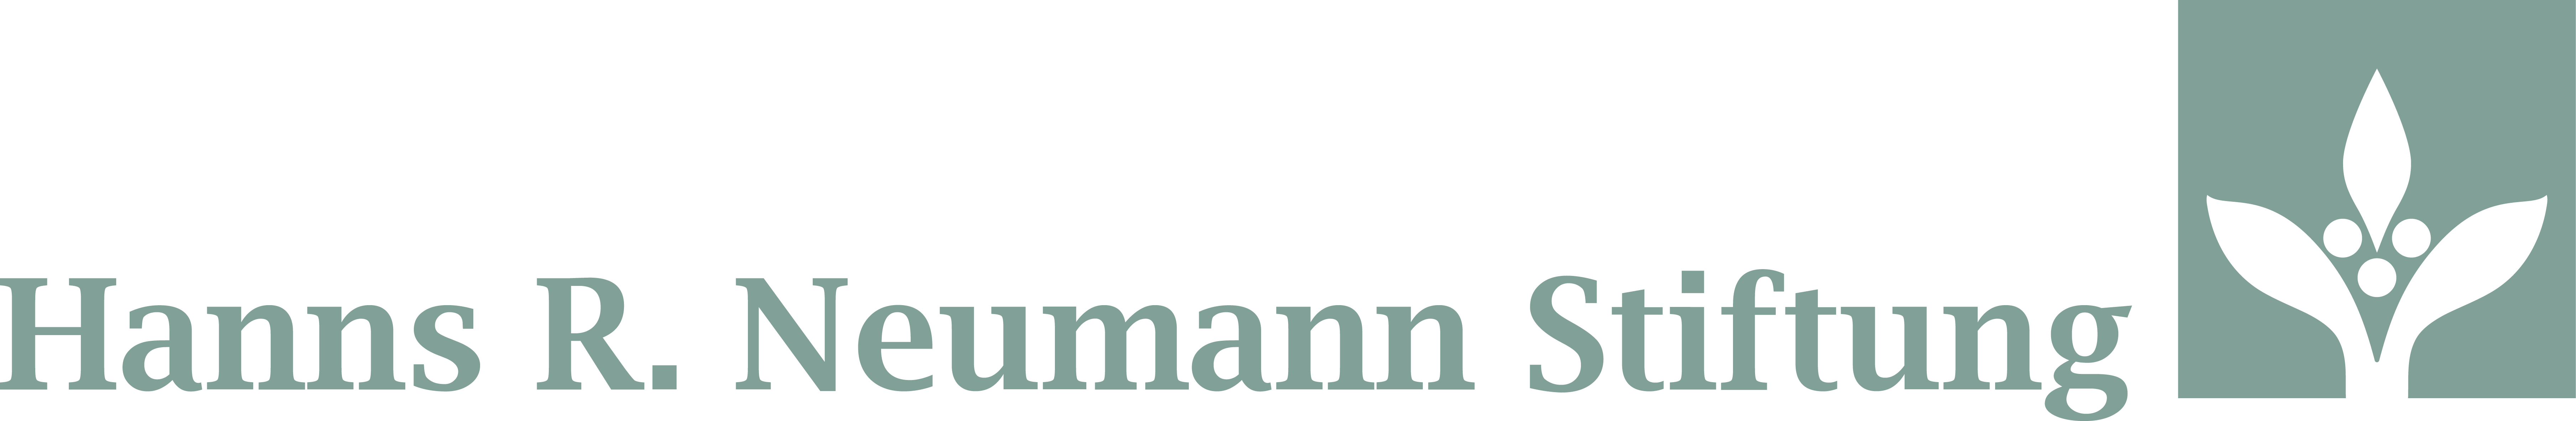 Hanns R. Neumann Stiftung Logo